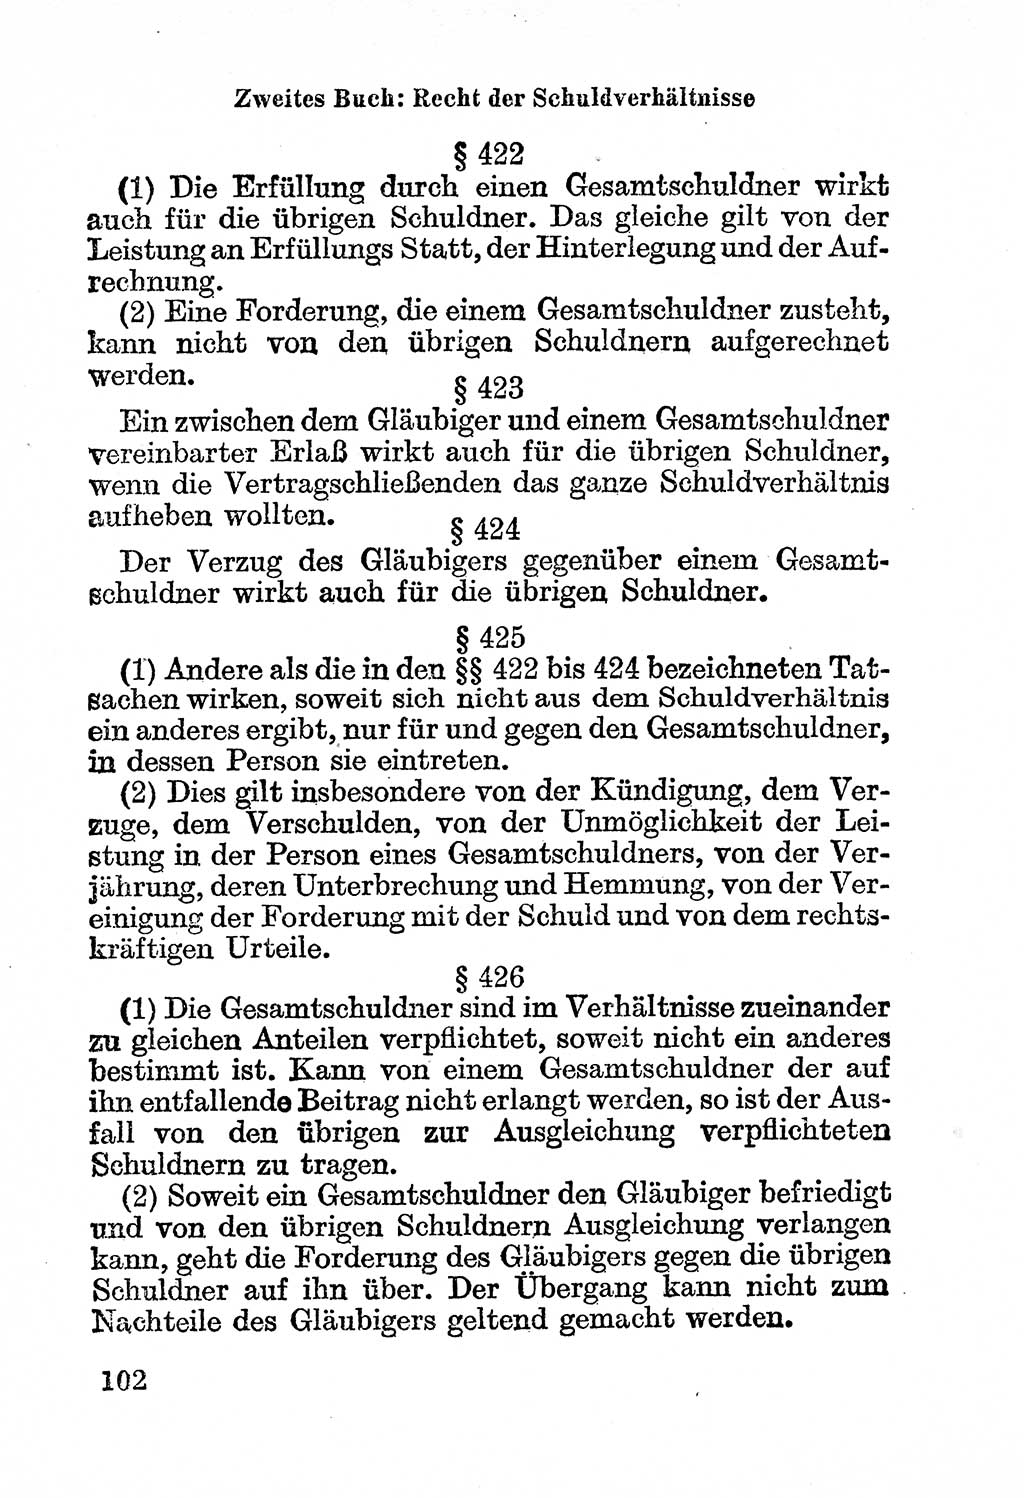 Bürgerliches Gesetzbuch (BGB) nebst wichtigen Nebengesetzen [Deutsche Demokratische Republik (DDR)] 1956, Seite 102 (BGB Nebenges. DDR 1956, S. 102)